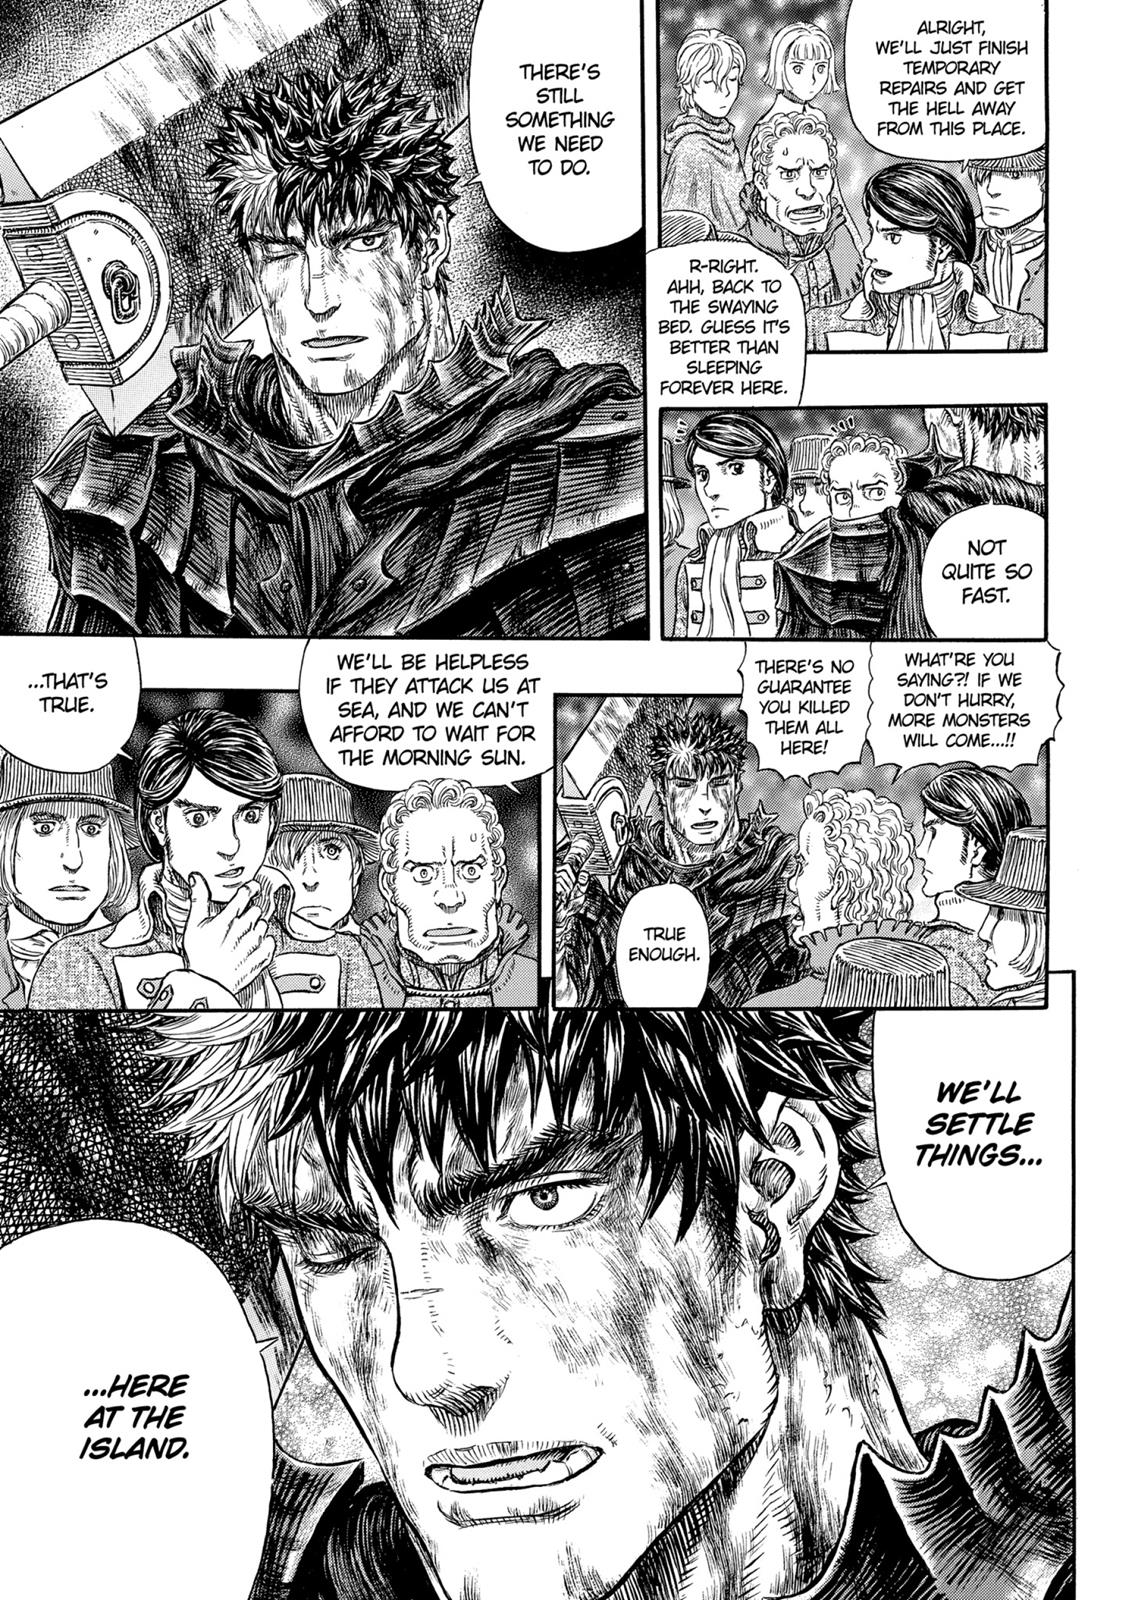 Berserk Manga Chapter 317 image 16